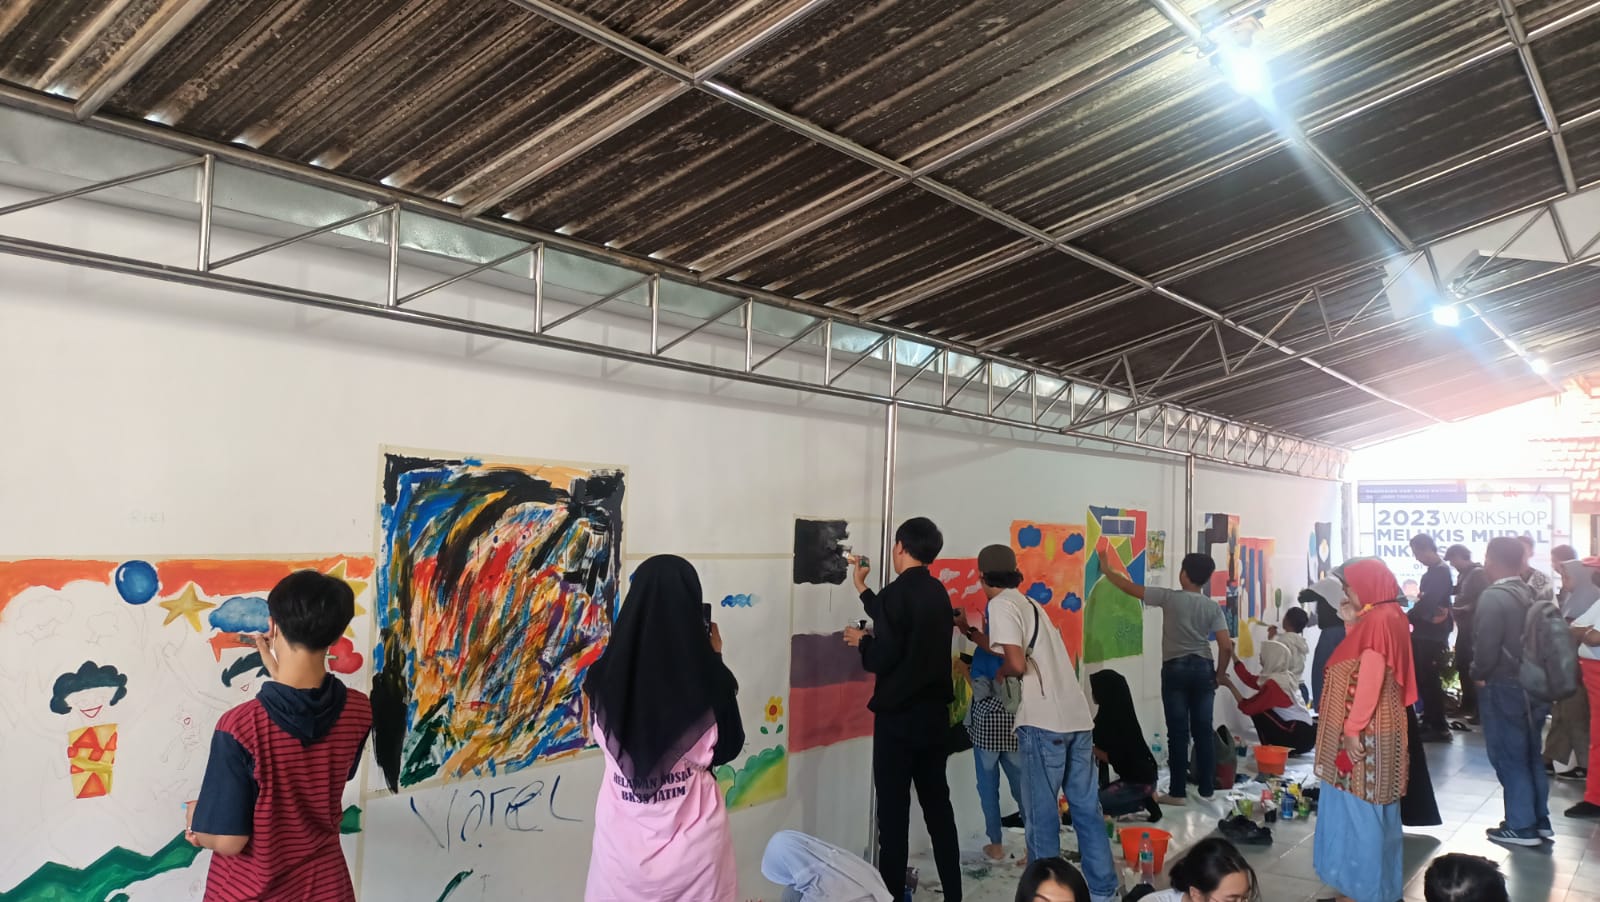 Workshop Melukis Mural di Dinding Sebagai Ruang Anak-anak untuk Berekspresi 